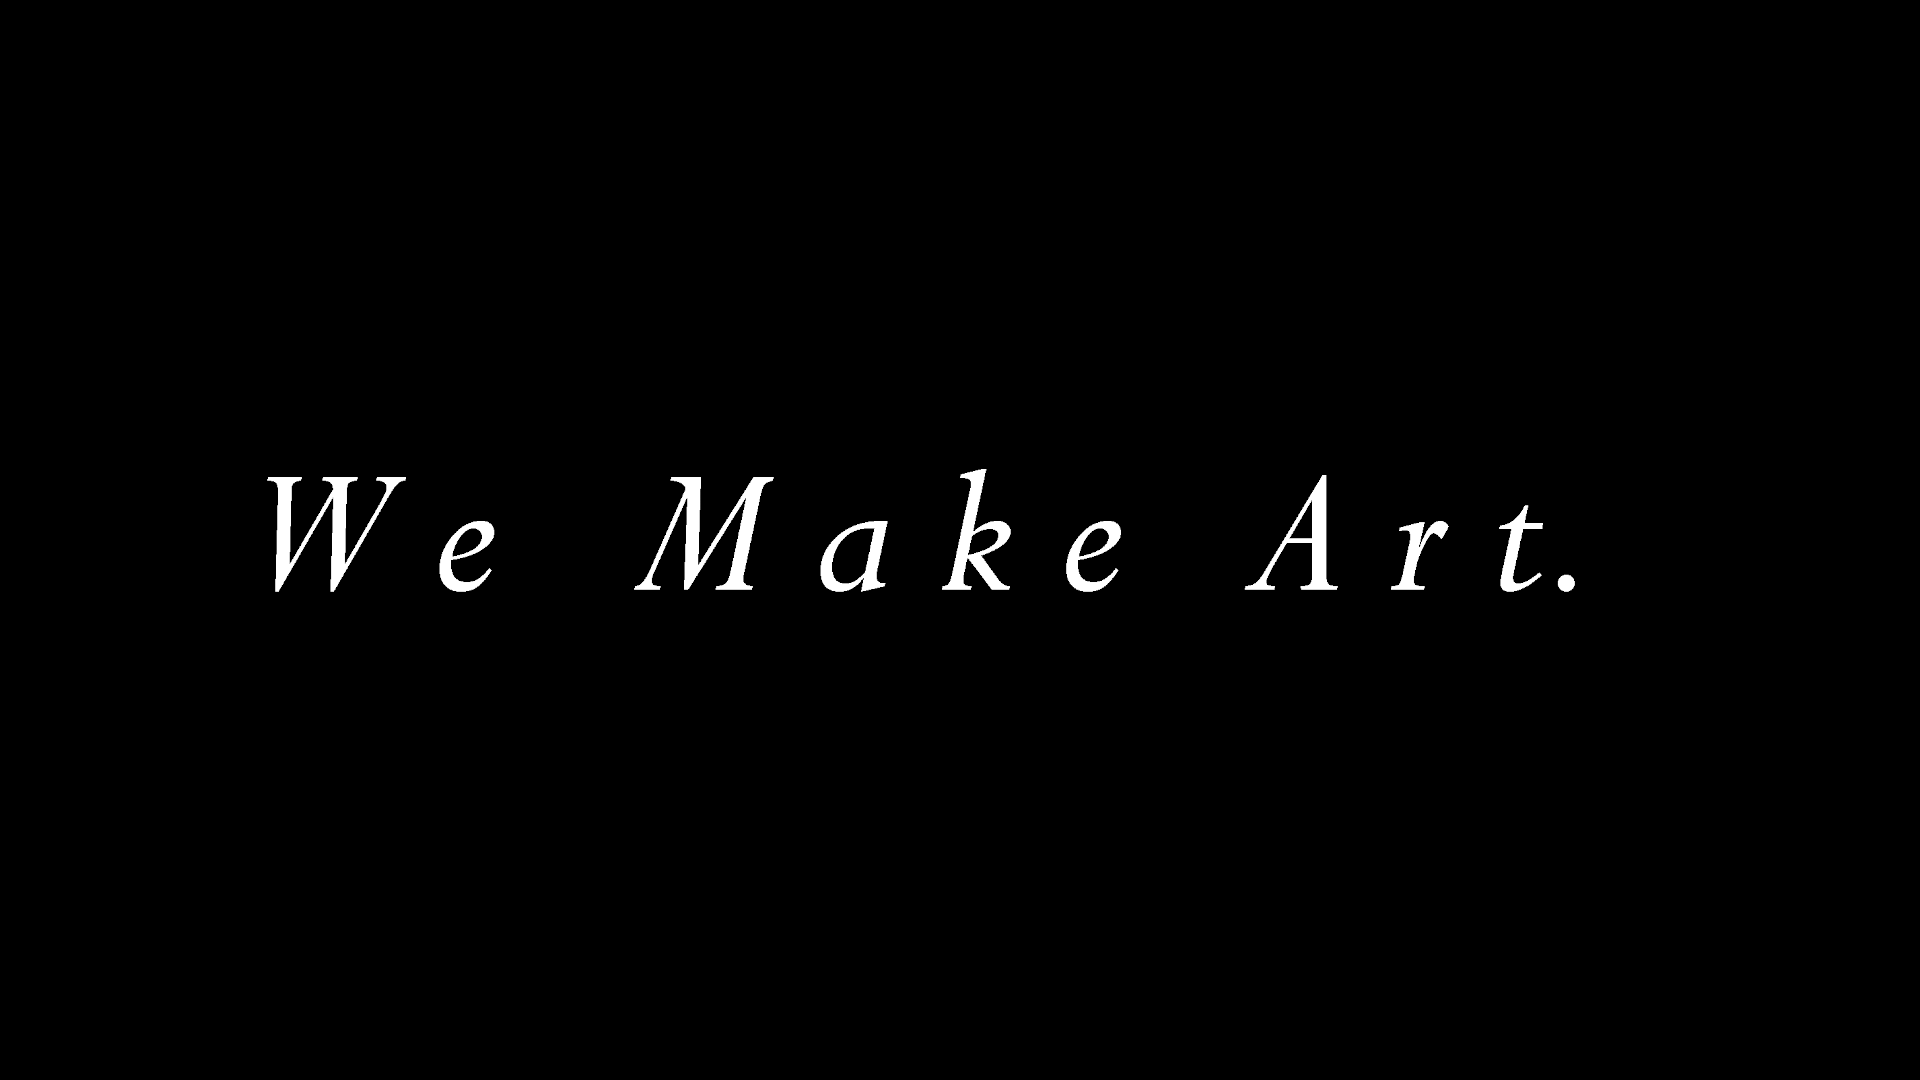 We Make Art. by ISIBOY 1Mc